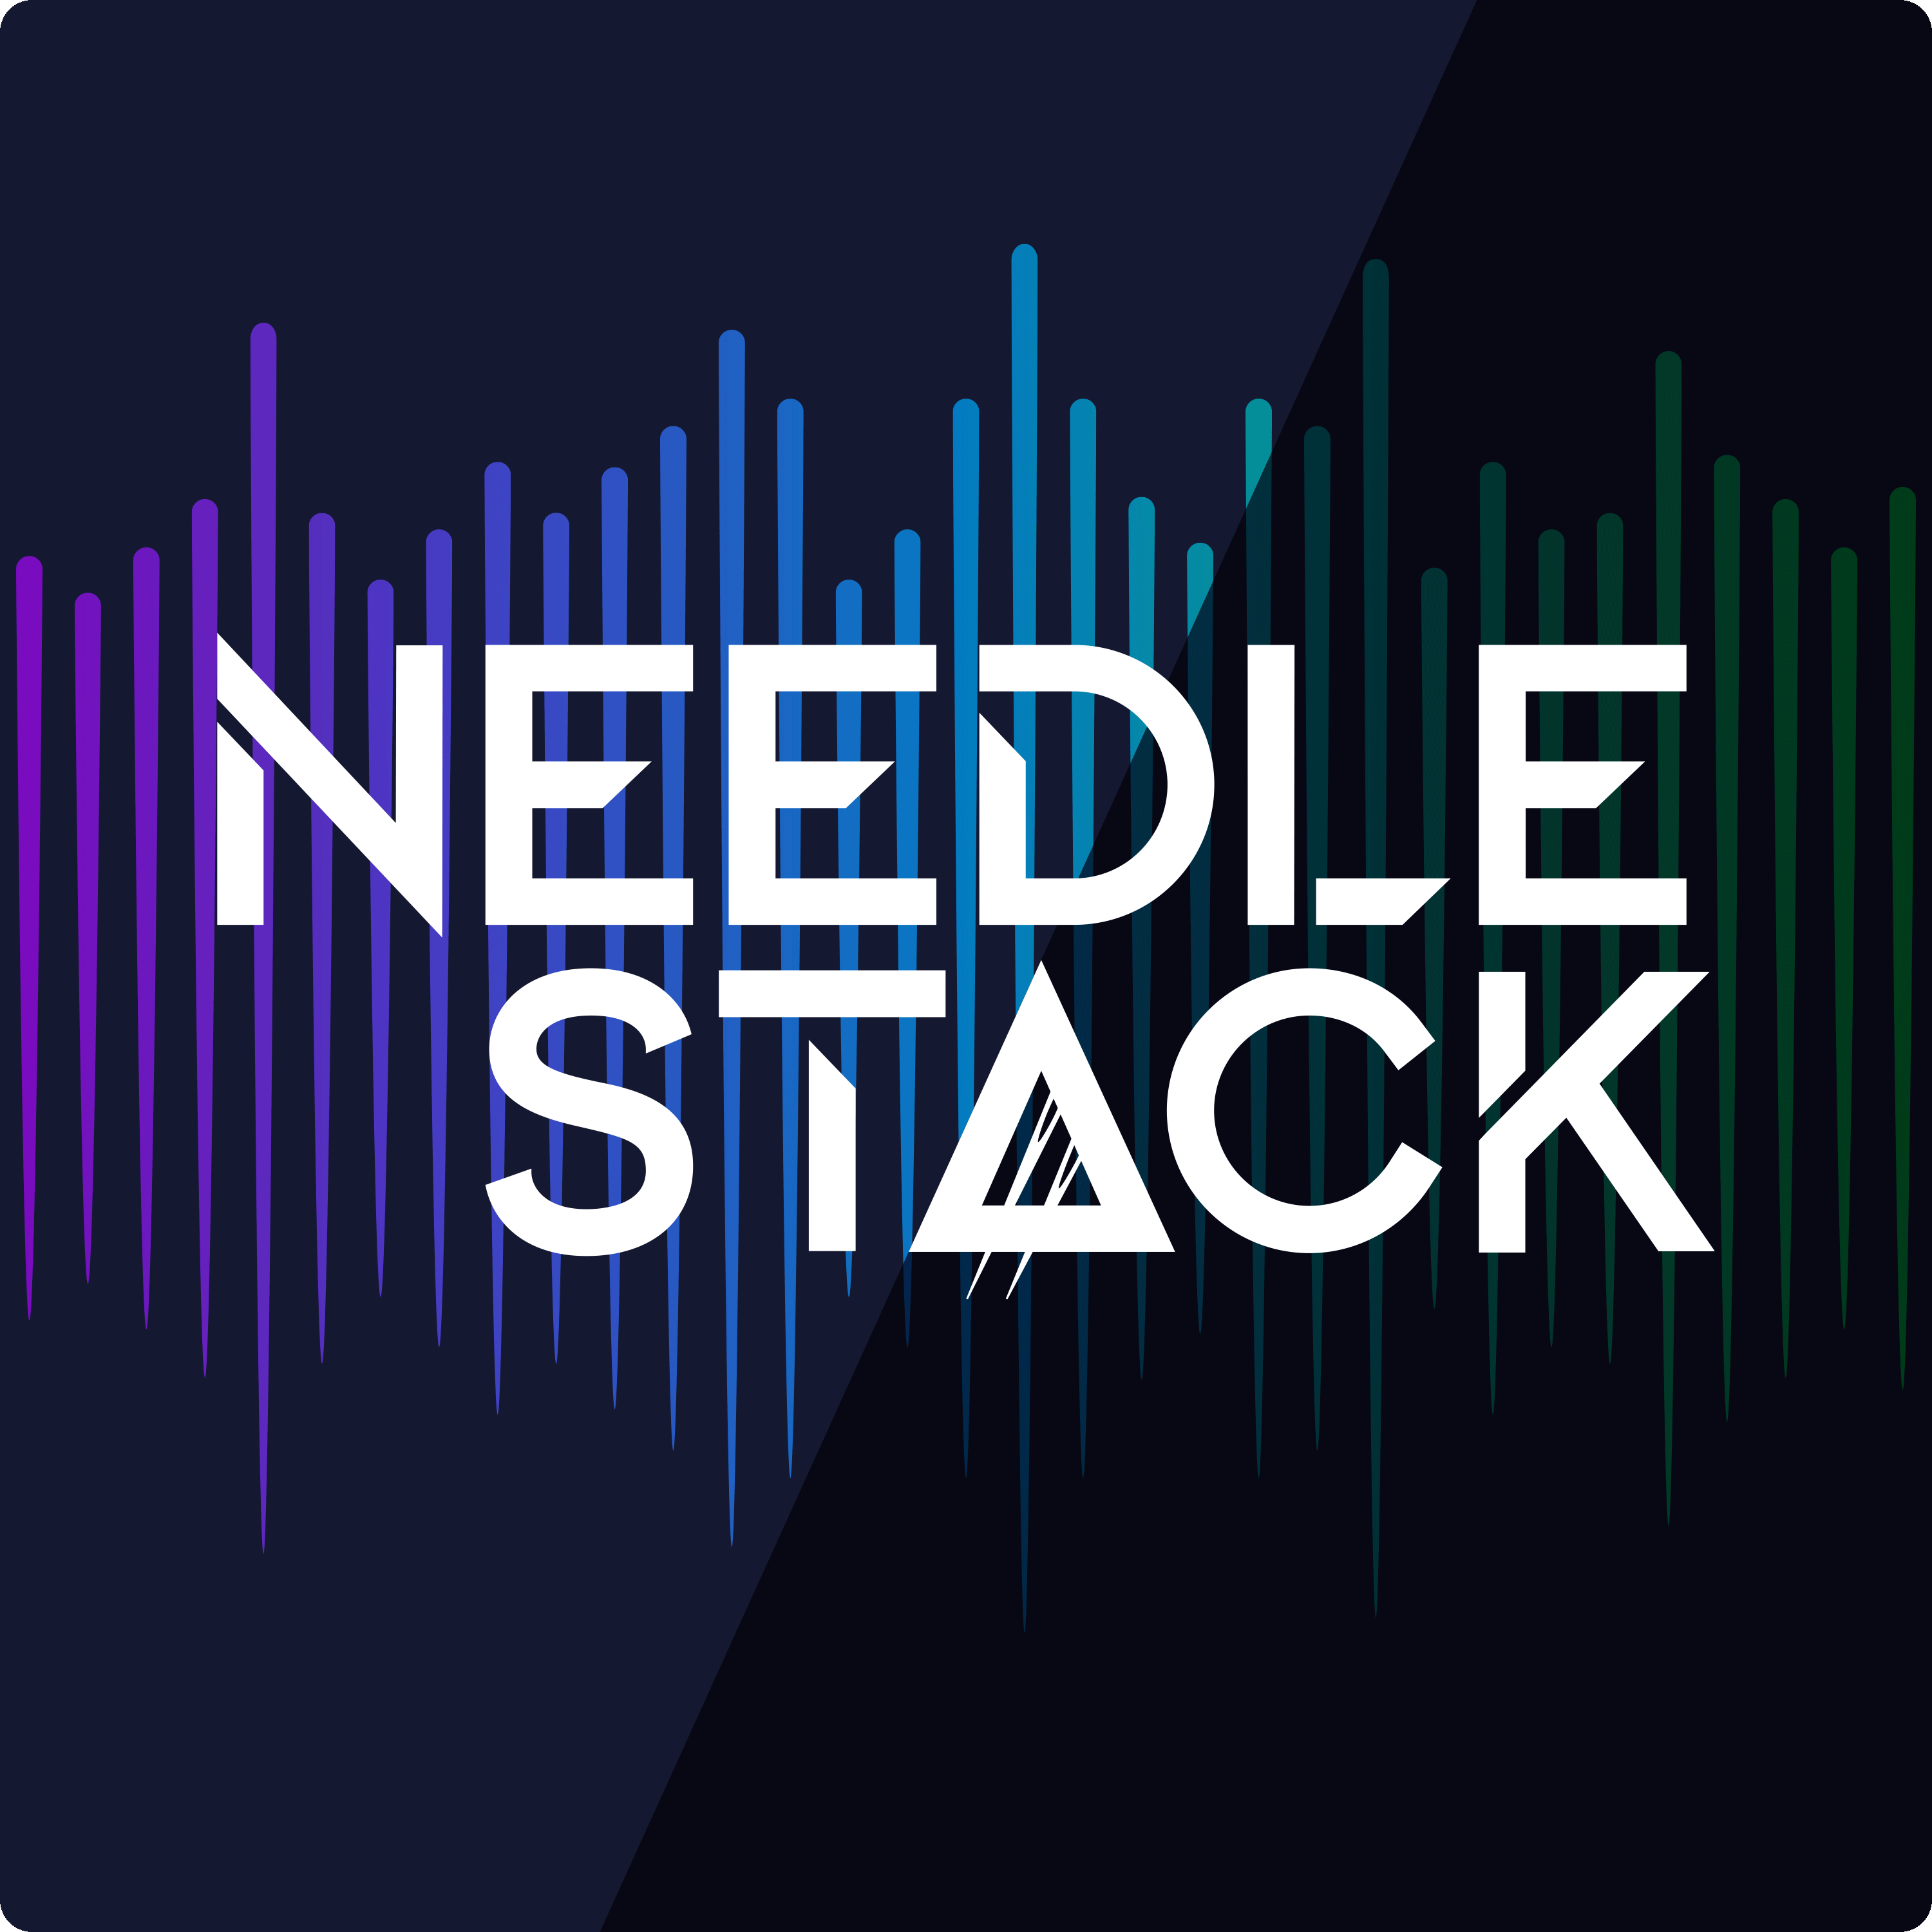 Artwork for podcast NeedleStack